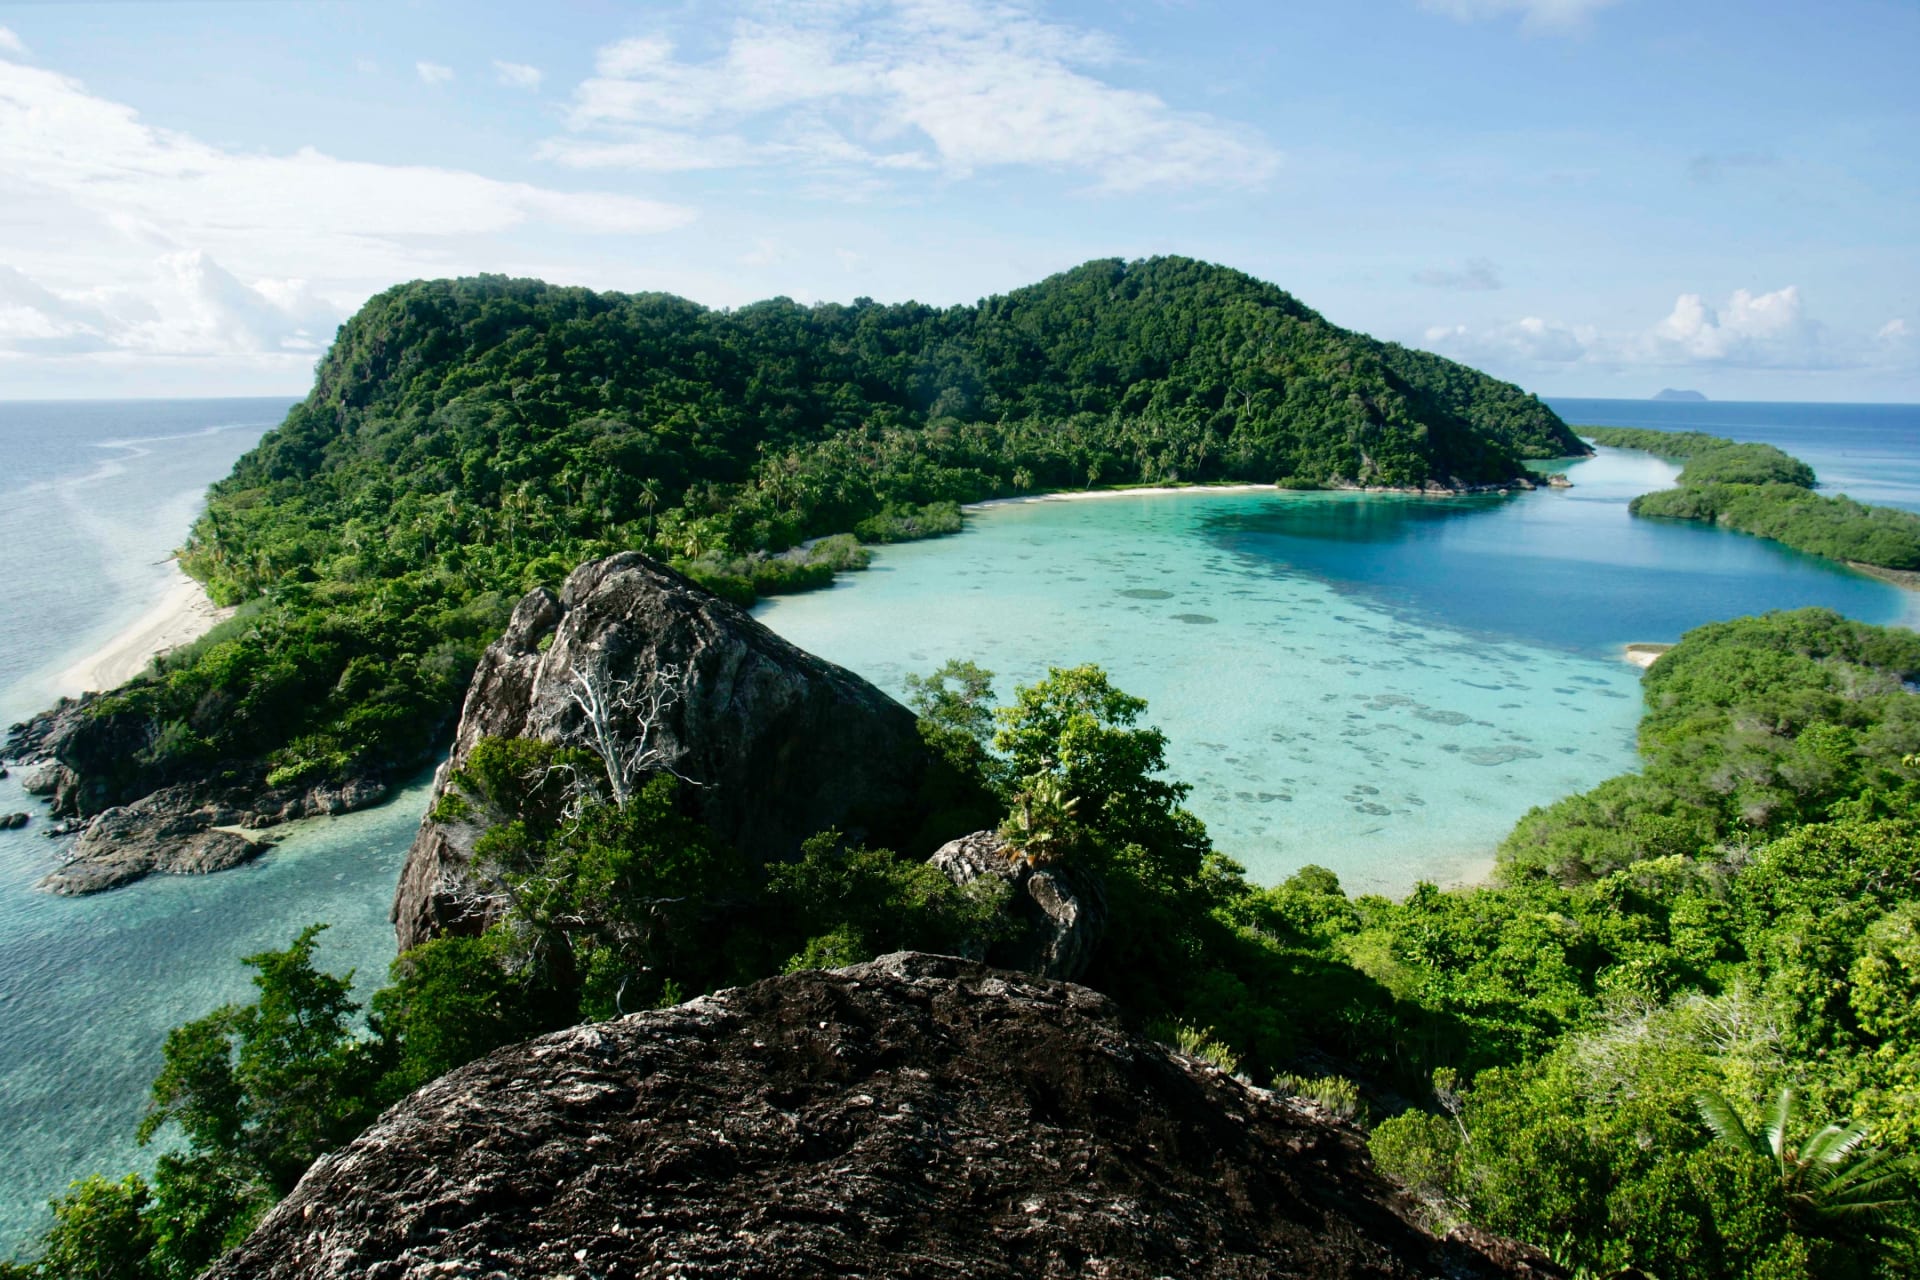 بعيداً عن ازدحام بالي.. اختبر الفخامة بهذه الجزر الإندونيسية النائية